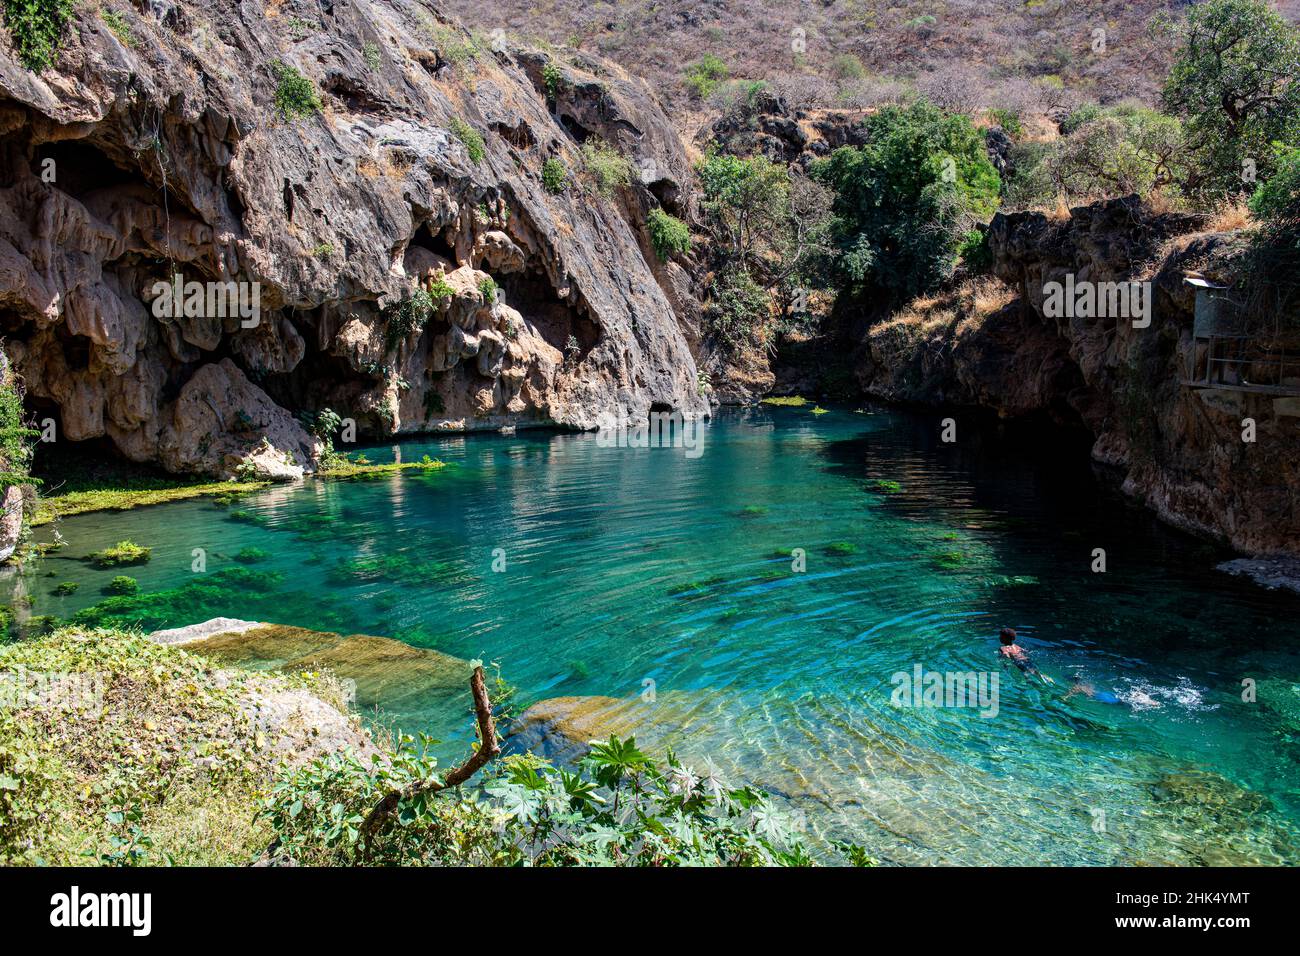 Piscines d'eau turquoise, Ain Sahlounge, Salalah, Oman, Moyen-Orient Banque D'Images